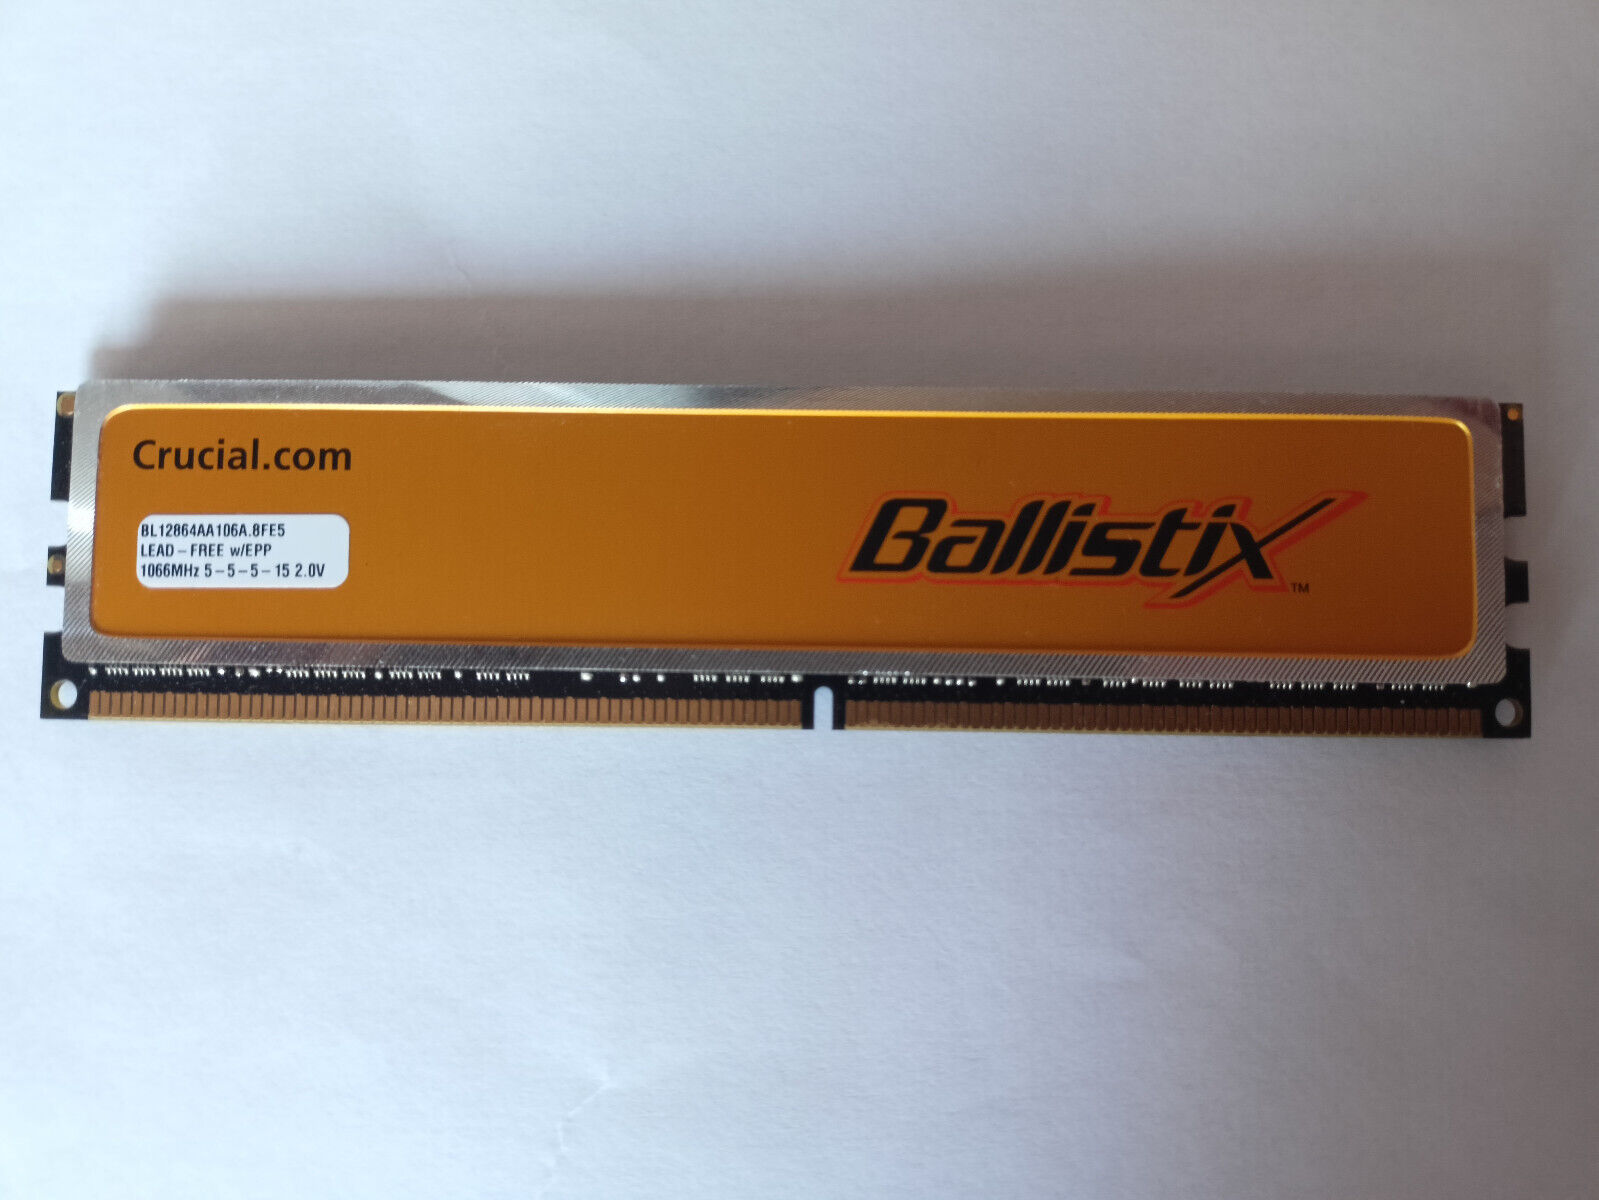 Crucial Ballistix 1GB DDR2 1066 PC2 8500 BL12864AA106A.8FE5